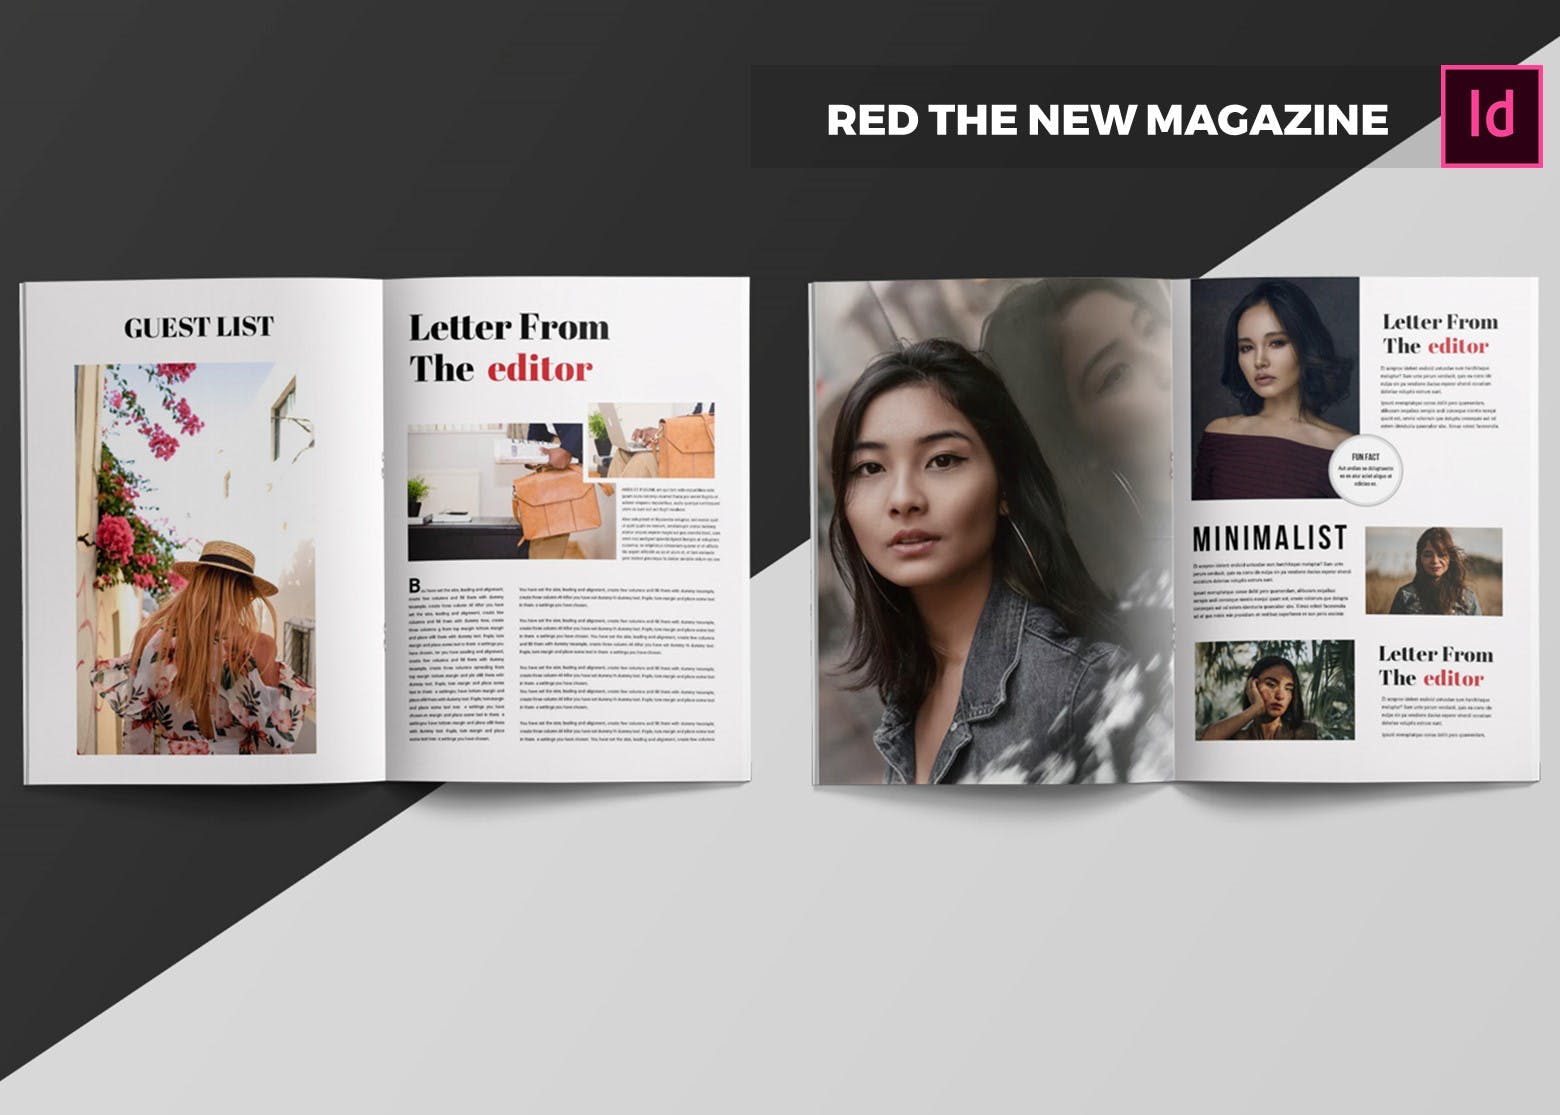 时尚/商业/人物/金融杂志设计模板 Red The New | Magazine Template插图(2)